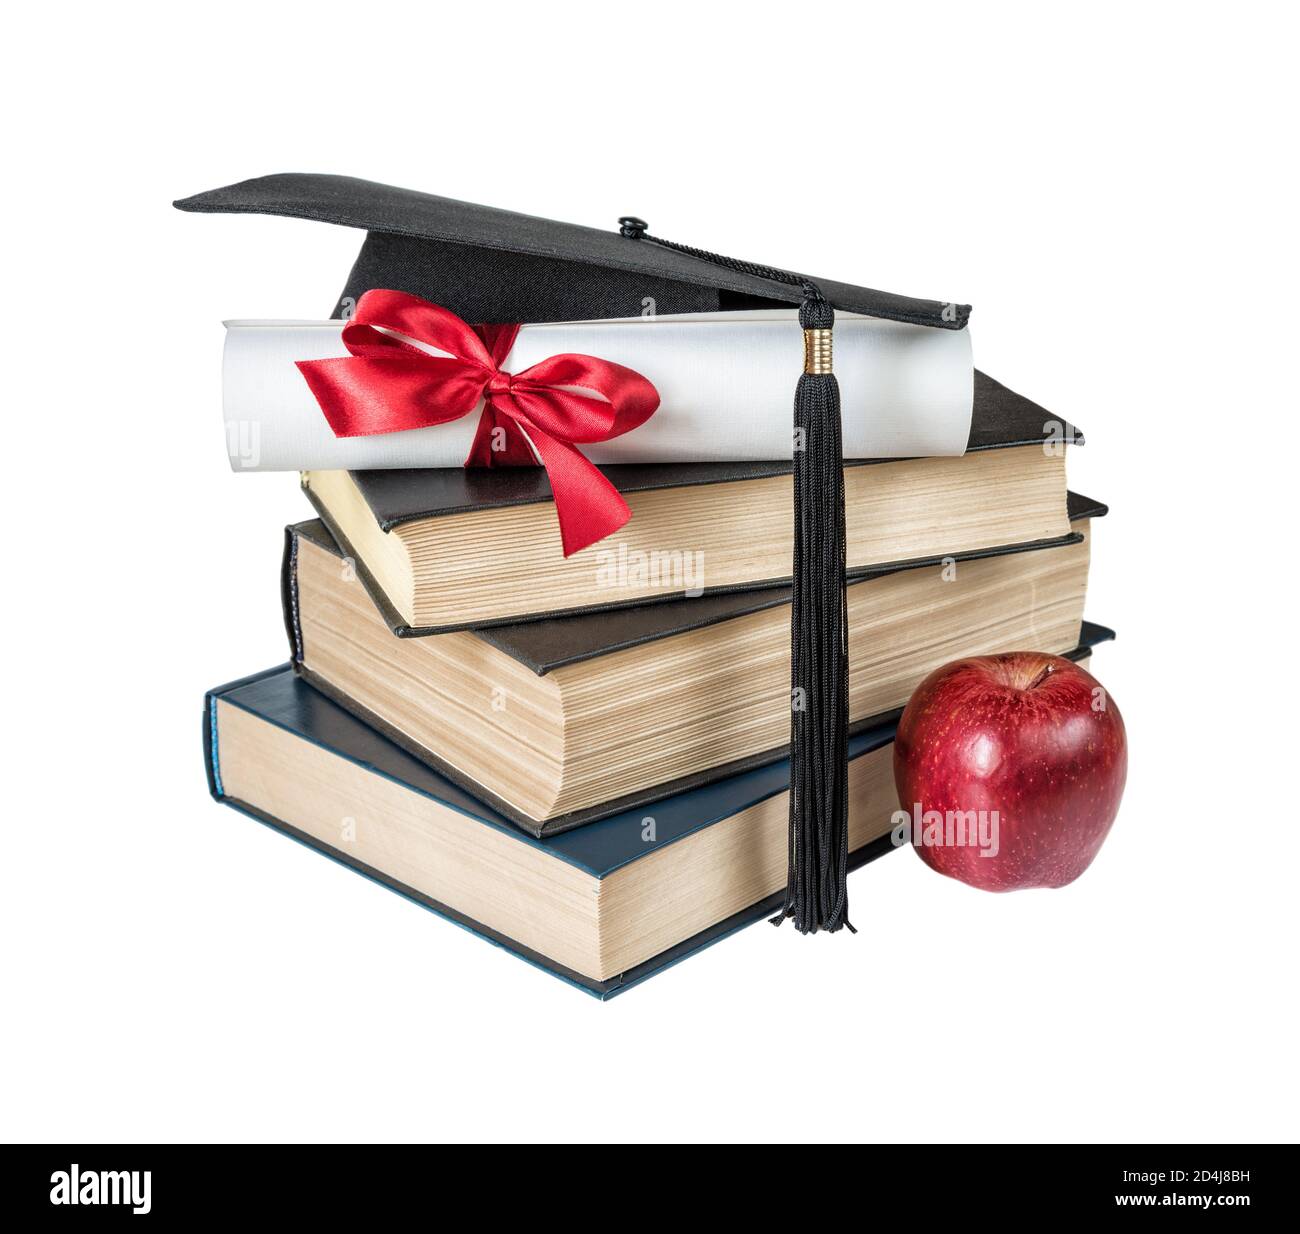 Concetto di educazione: Cappello nero laureato, pila di grandi libri, mela rossa e rotolo di carta legato con nastro rosso con un arco, isolato su uno sfondo bianco Foto Stock